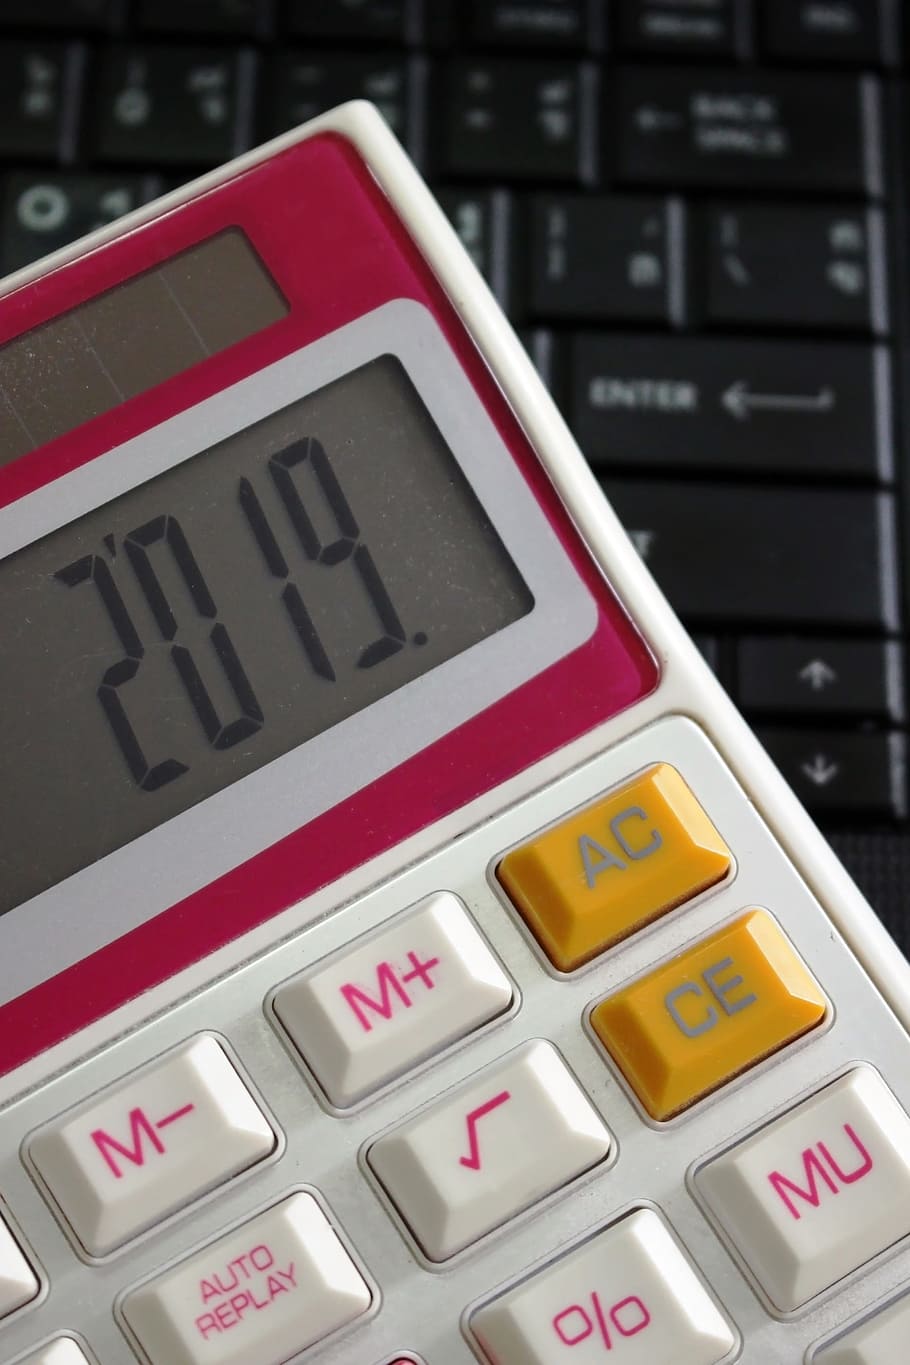 2019, tela da calculadora, teclado de computador, calculadora, tela, ano, computador, teclado, tecnologia, números